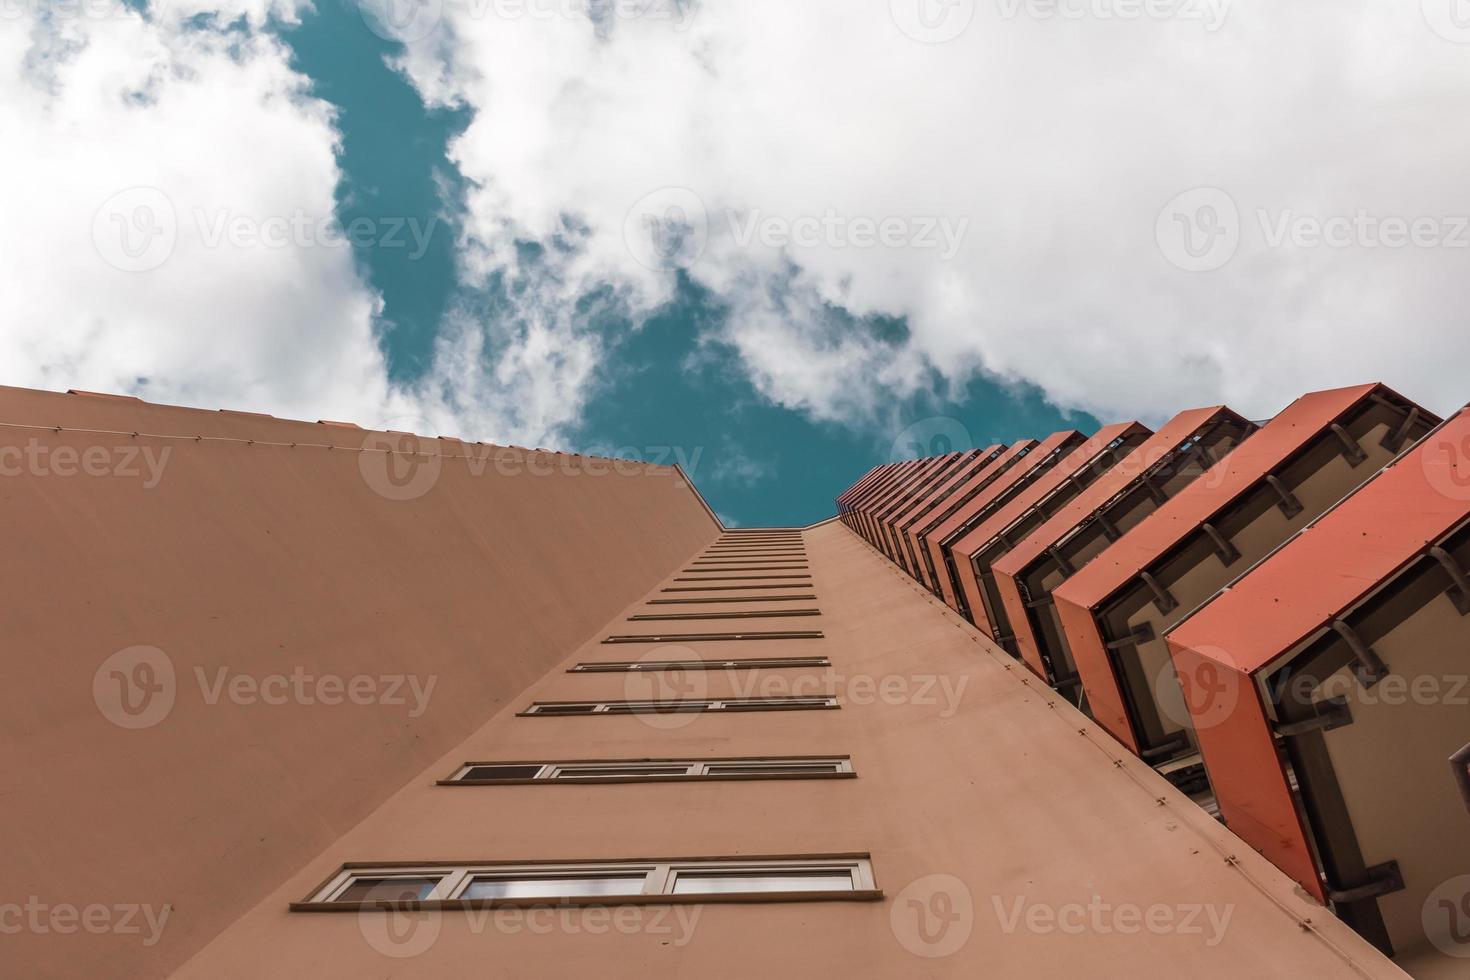 un grattacielo con piccoli balconi rossi con vista dal basso foto